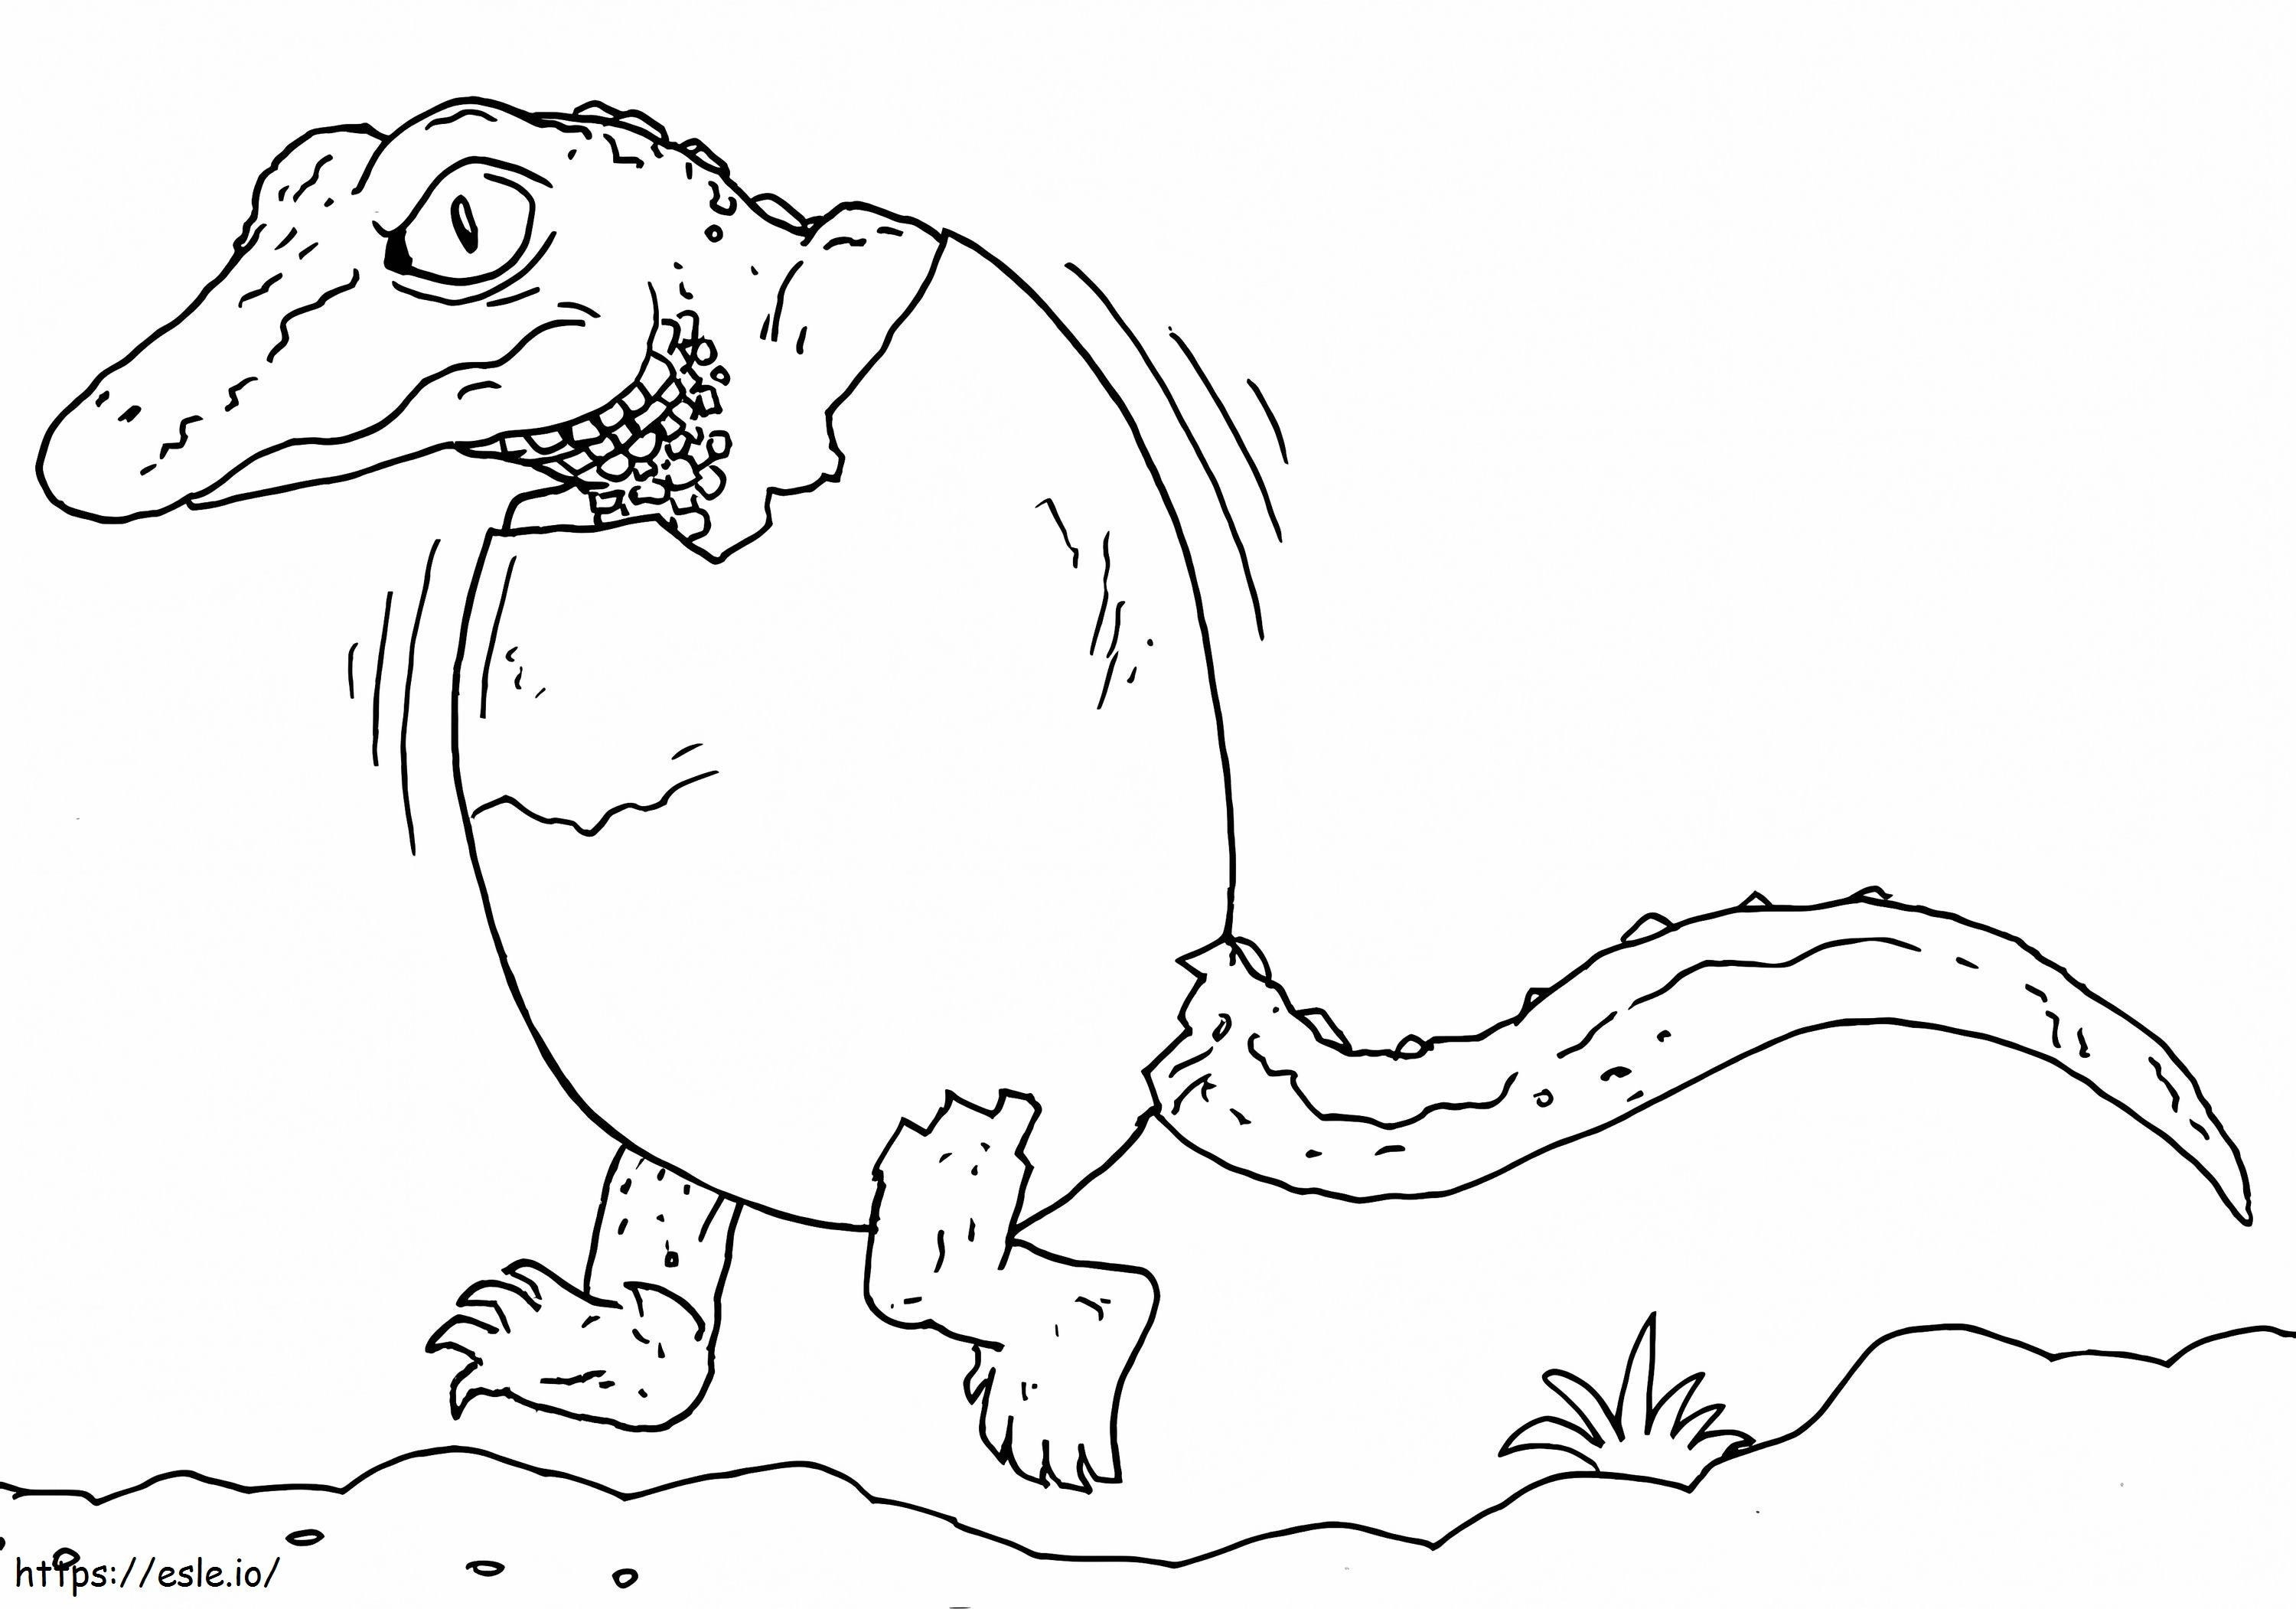 Alligator im Ei ausmalbilder